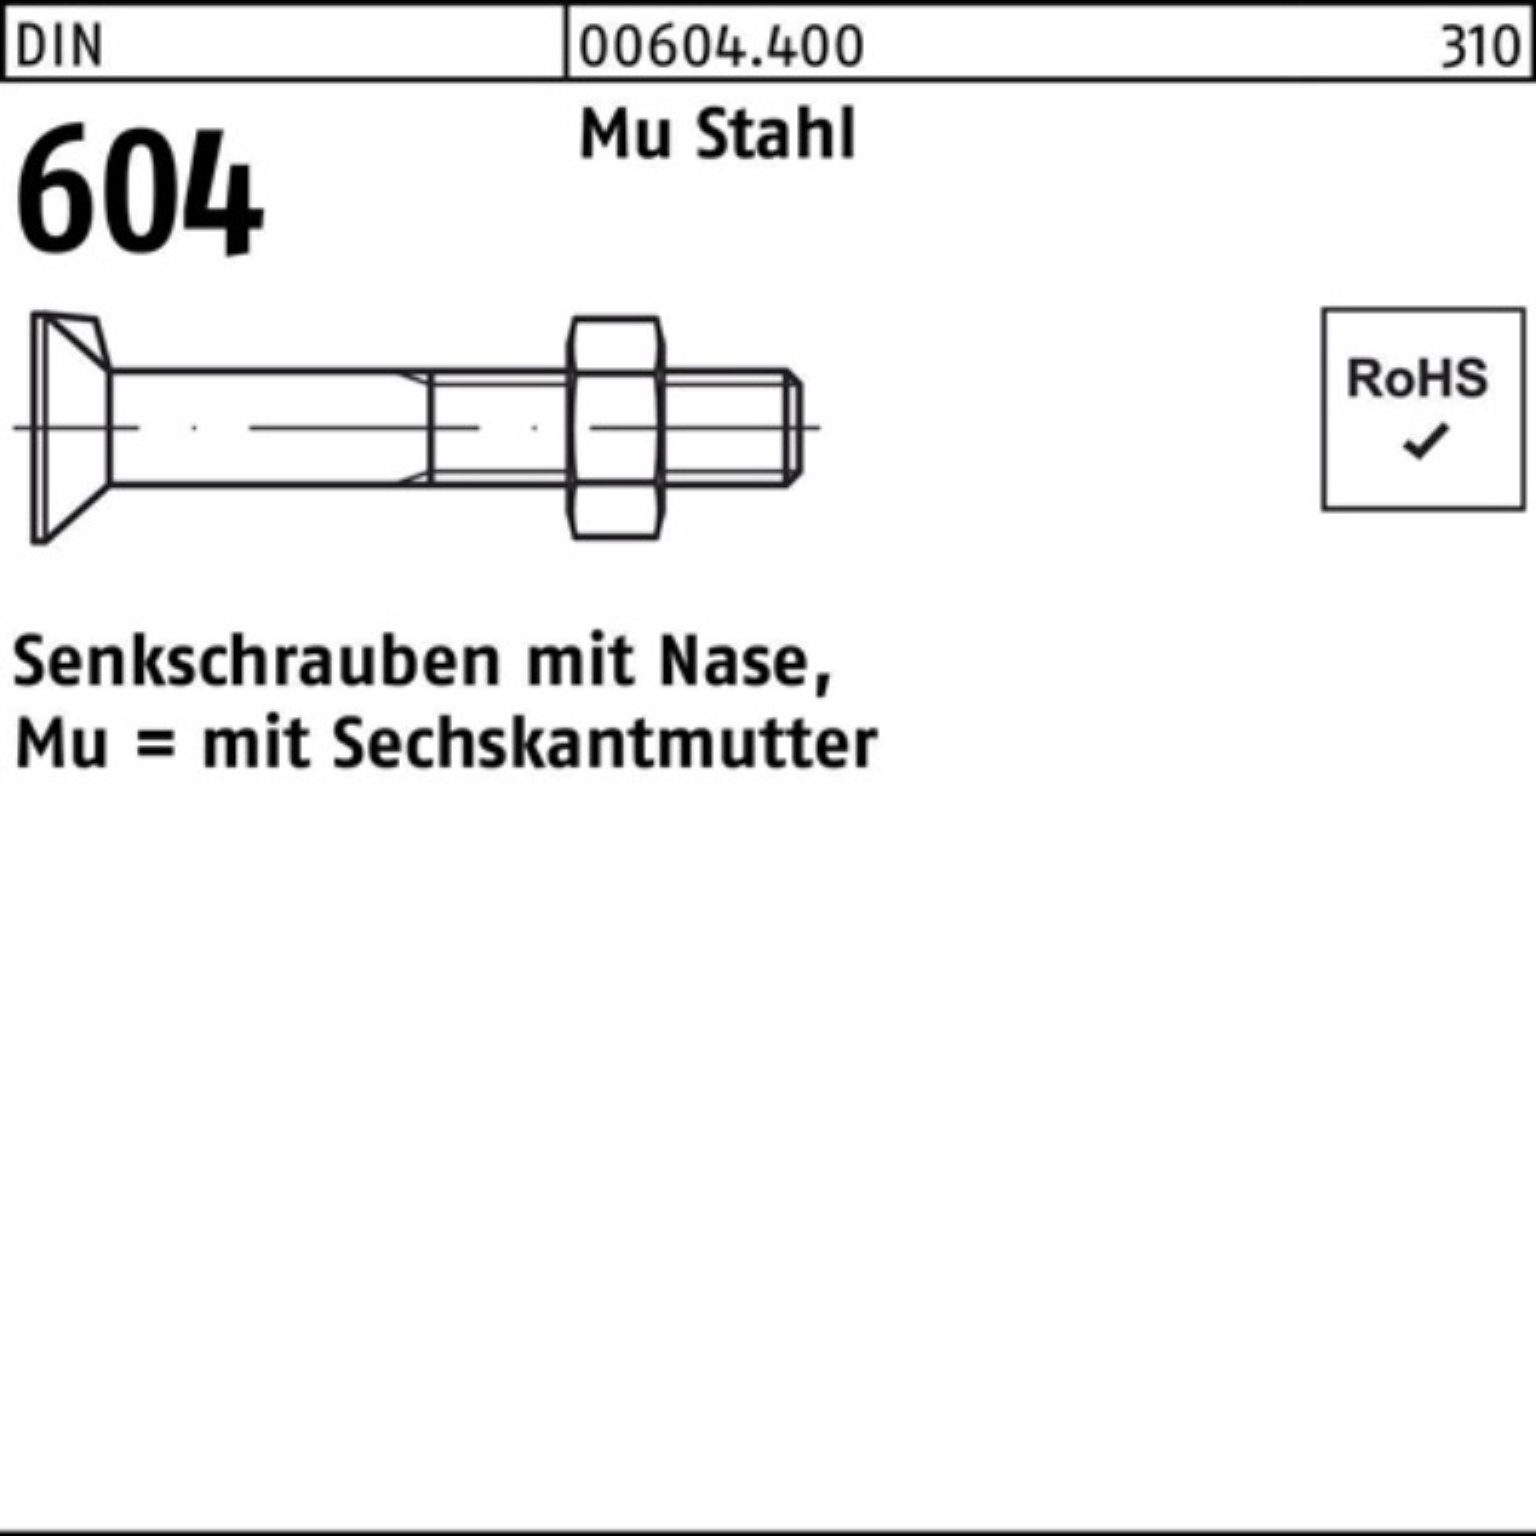 Senkschraube 100er 5 604 Pack Nase/6-ktmutter Stahl Reyher 4.6 90 Senkschraube DIN Mu M12x